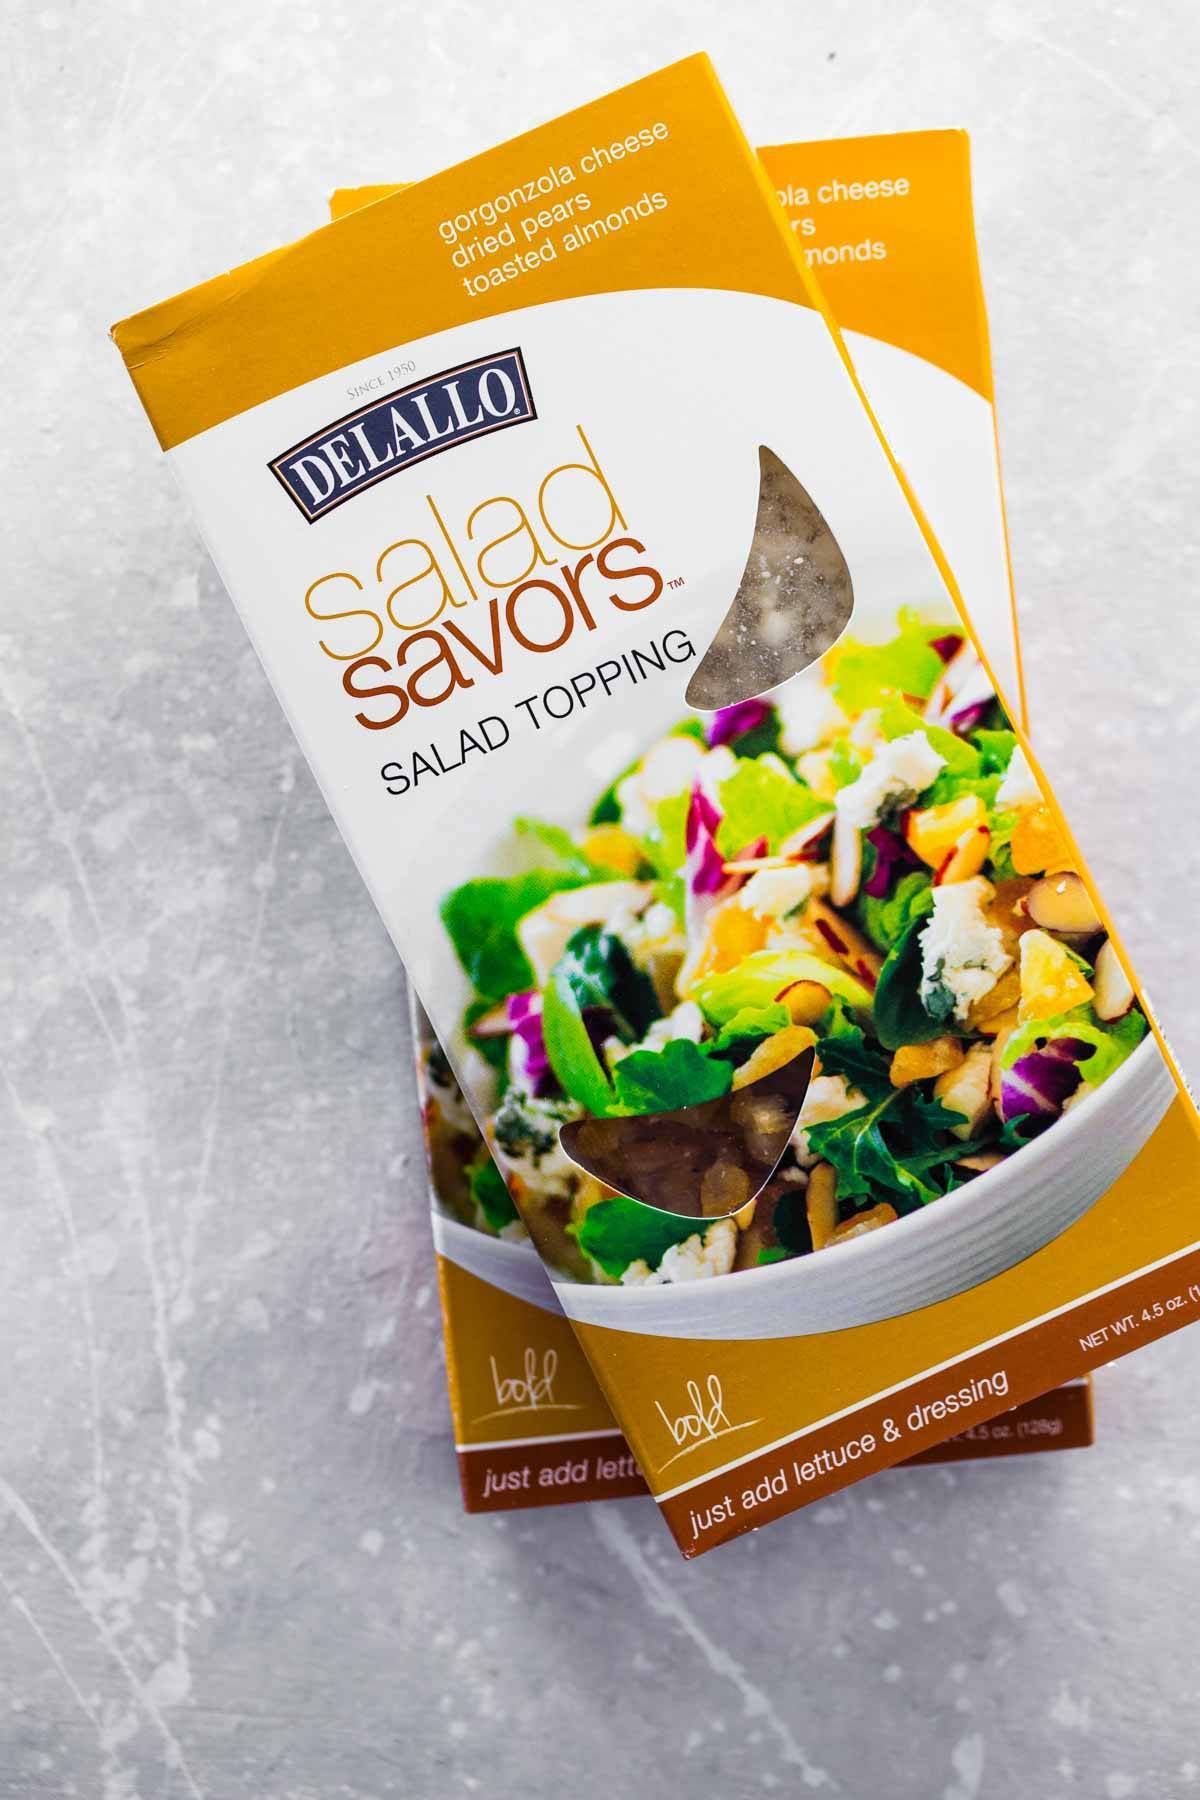 Salad saver salad topping.